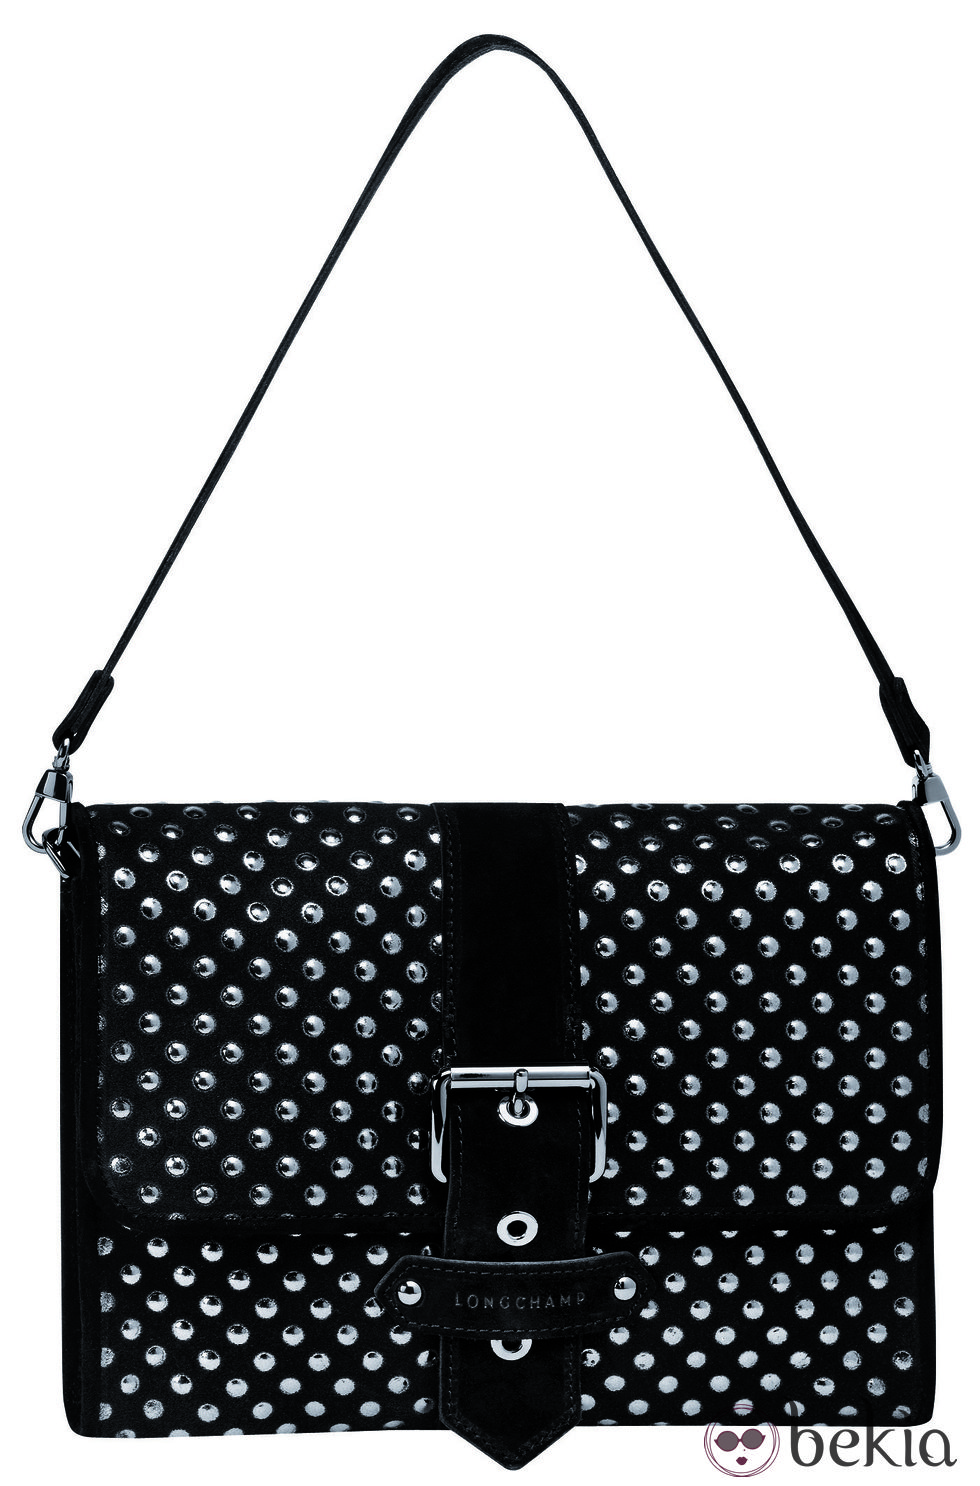 Bolso de Longchamp en negro de la colección primavera 2015